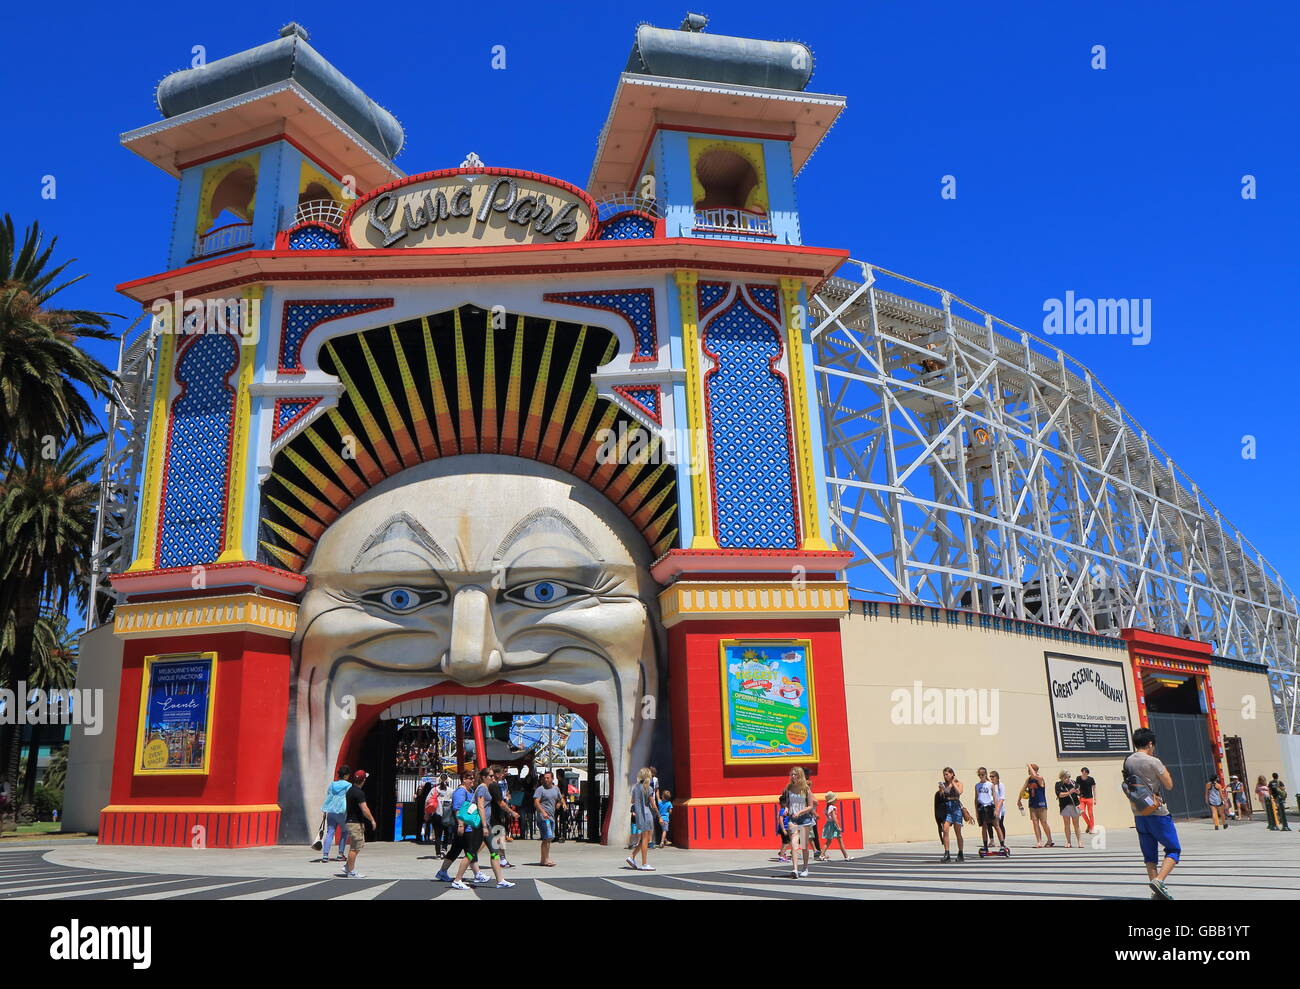 La gente visita el parque de atracciones Luna Park en Melbourne Australia Foto de stock